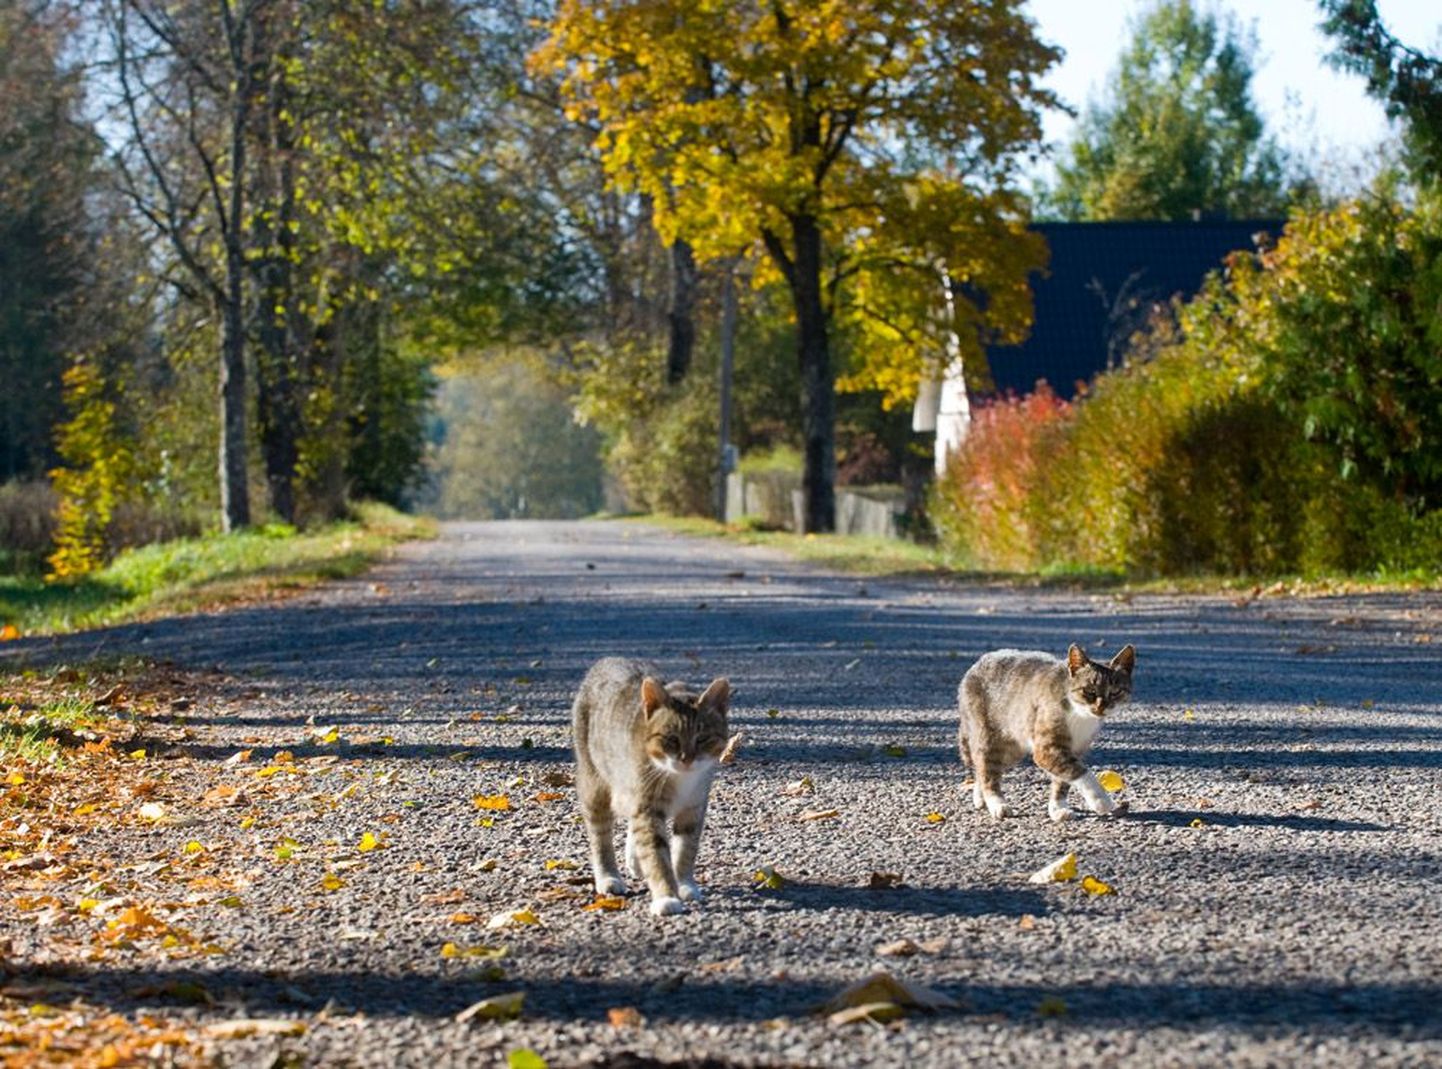 Priipalu külatänaval valitseb tühjus ja seal jalutavad vaid uimased kassid. Fotod: Mihkel Maripuu